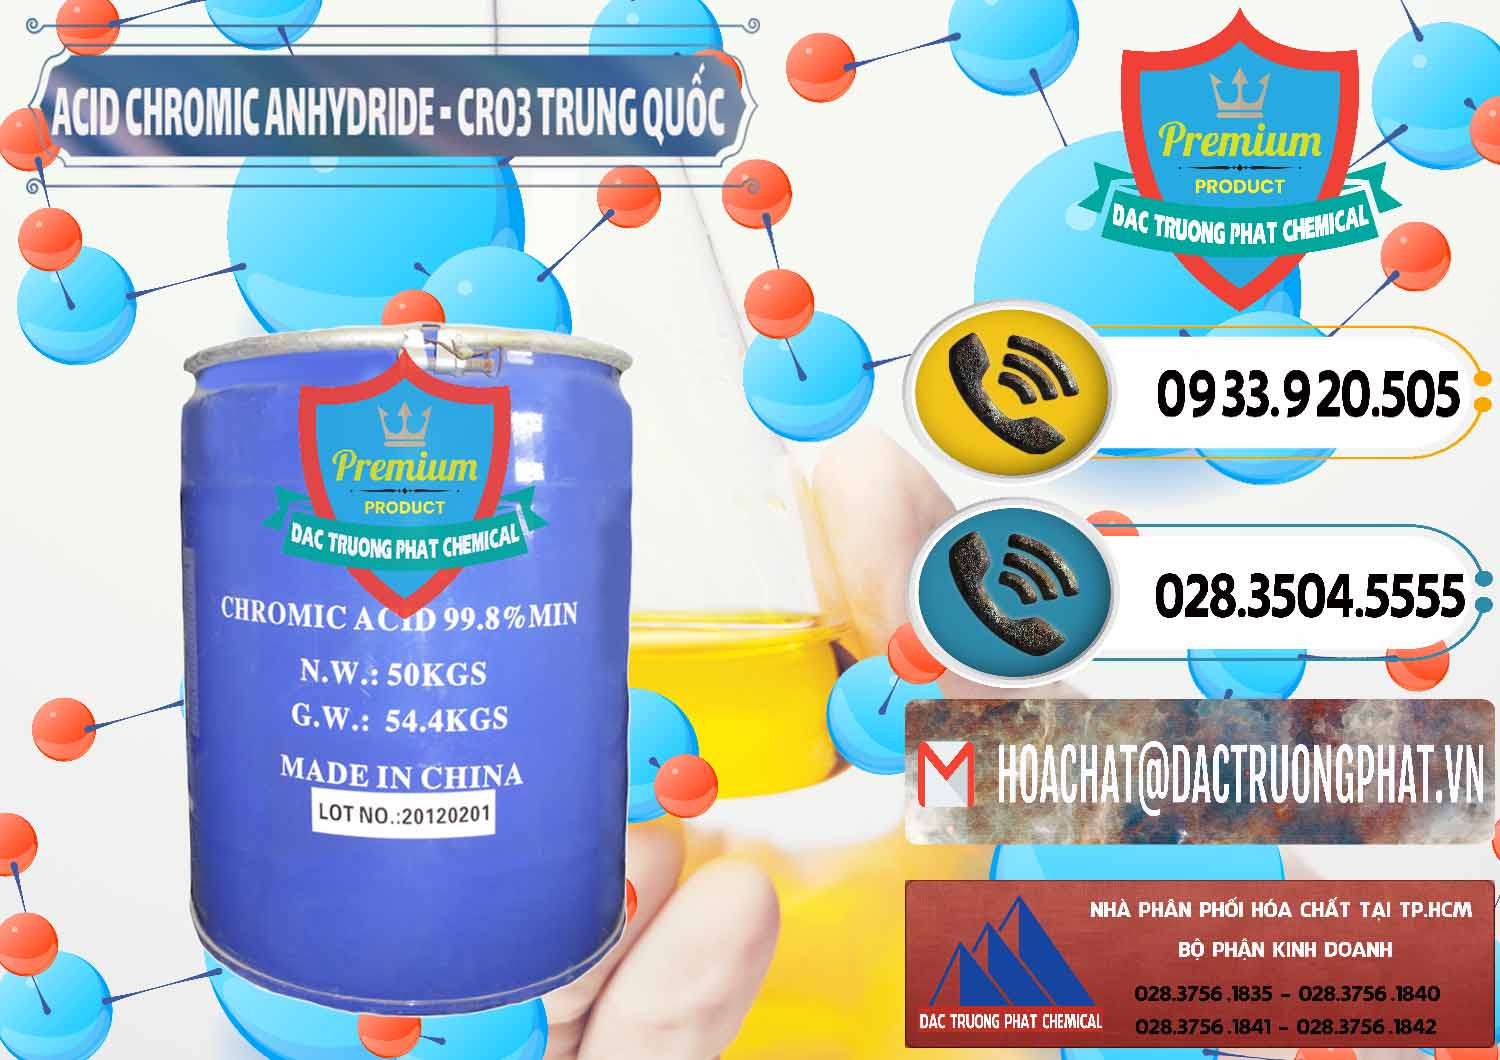 Cty kinh doanh ( bán ) Acid Chromic Anhydride - Cromic CRO3 Trung Quốc China - 0007 - Cty bán _ phân phối hóa chất tại TP.HCM - hoachatdetnhuom.vn